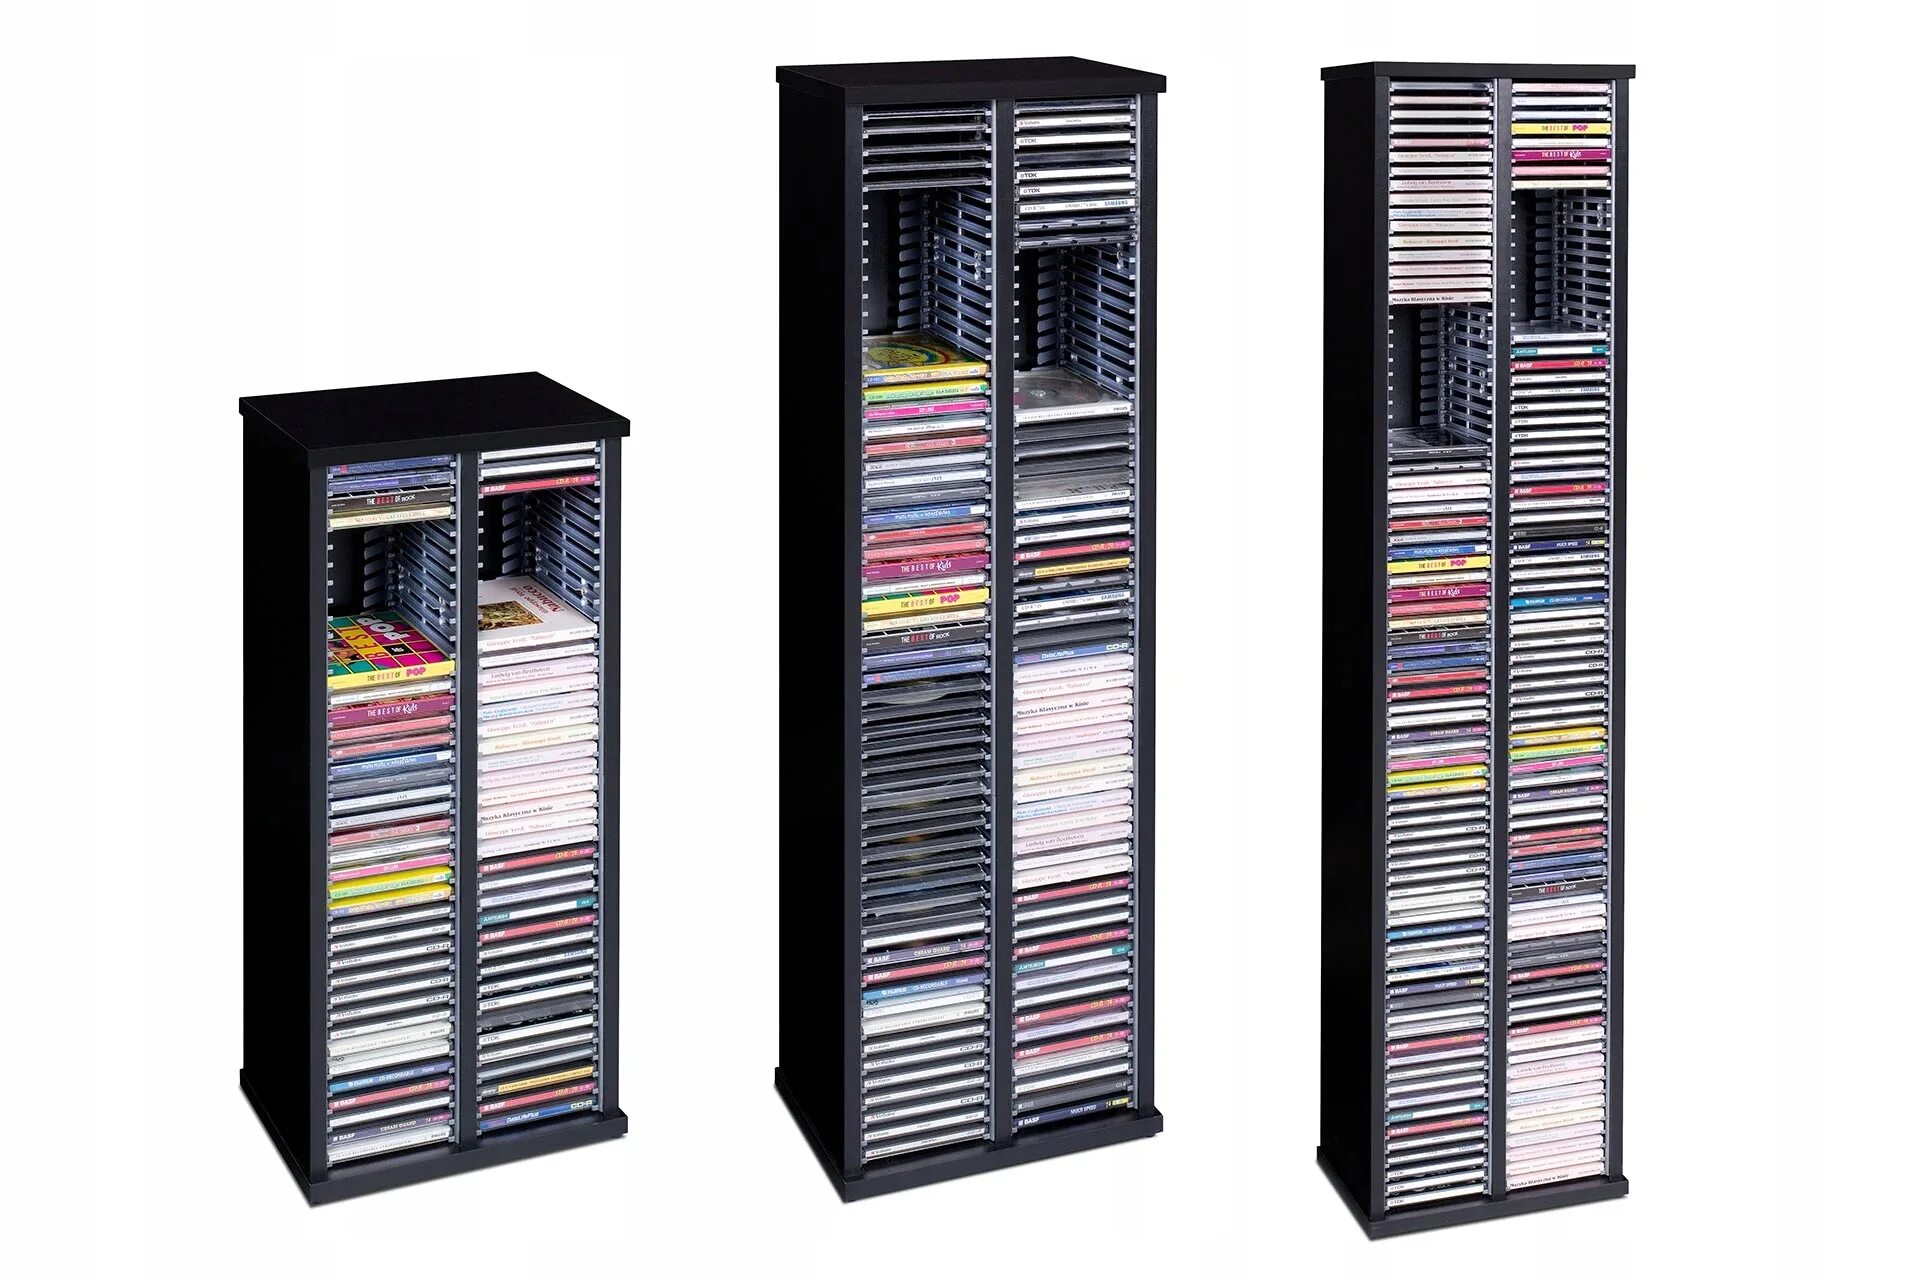 Купить стойку полку. Стойка для CD 60шт Soundbox CD-60 ND. Полка для CD дисков CDM-c60. Подставка для CD/DVD BRAUBERG на 20 дисков. Полка для CD дисков CDM-c60 диск бокс на 60 боксов, цельнолитая, чёрная.